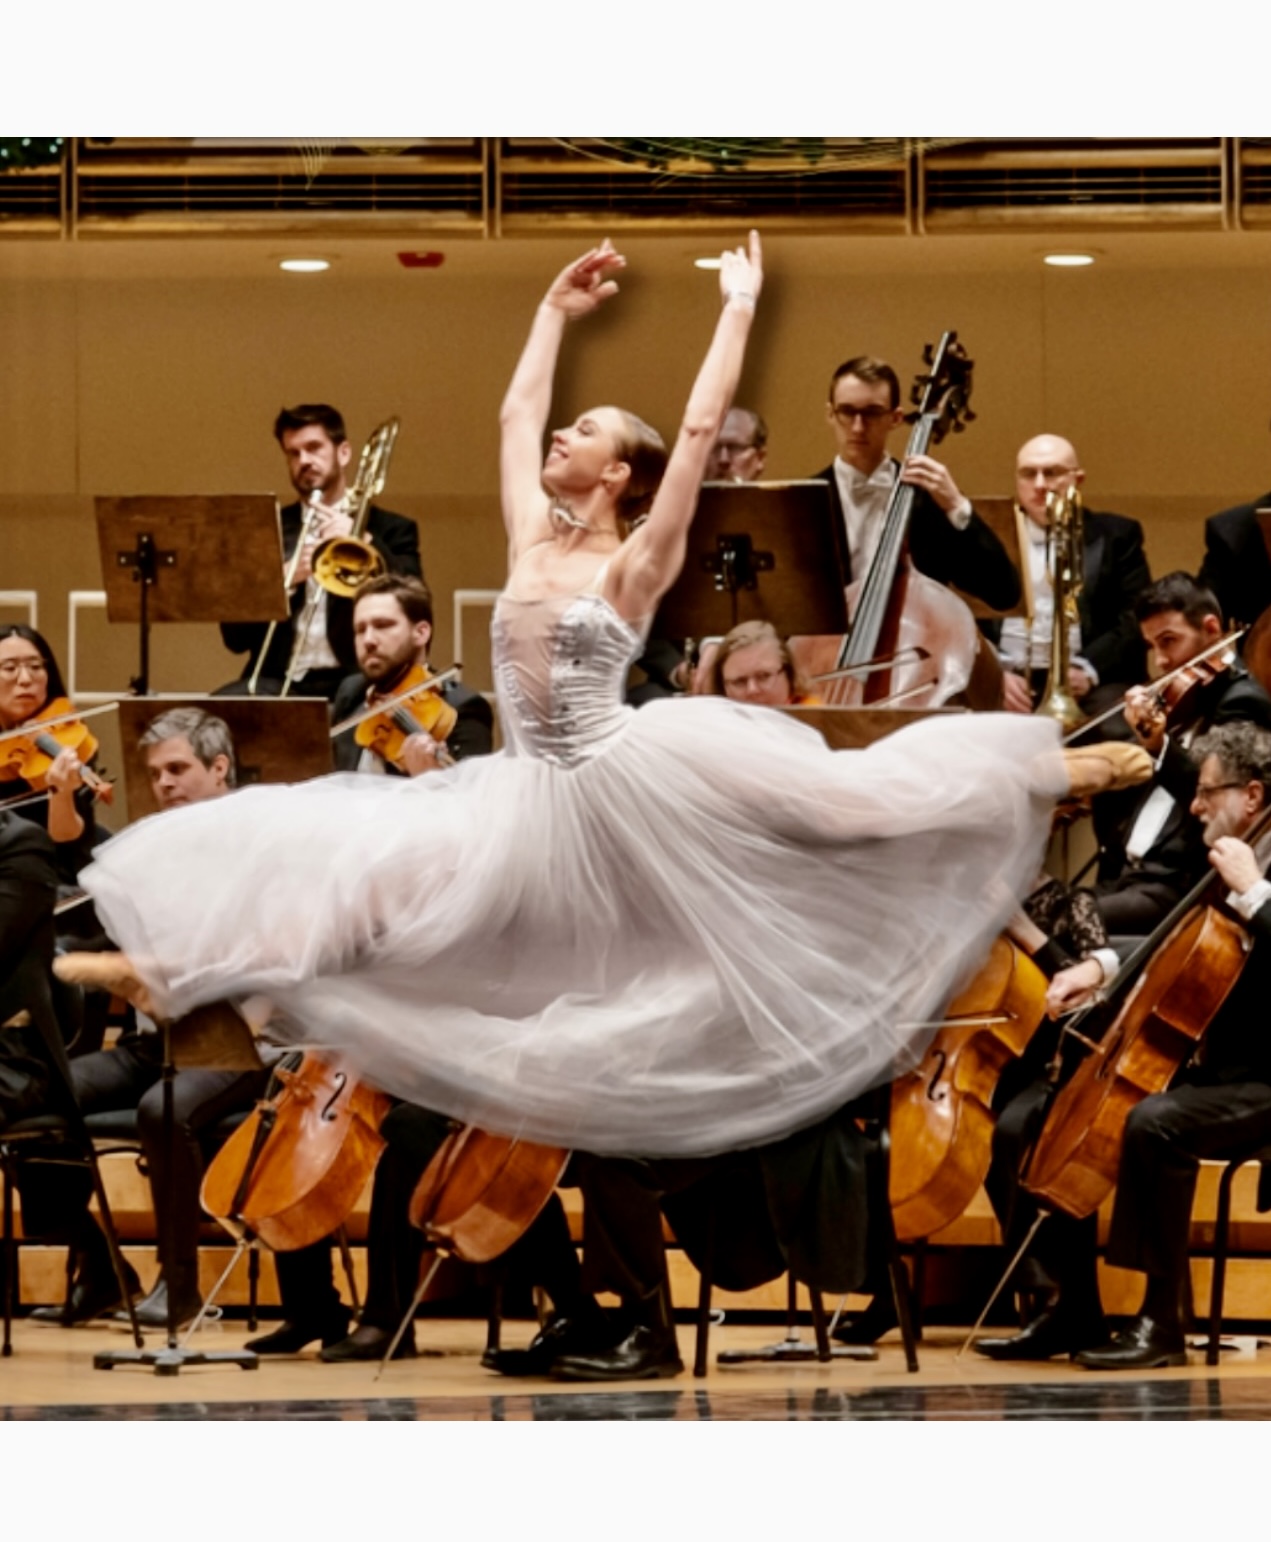 Une danseuse de ballet en robe blanche exécutant avec grâce les mélodies envoûtantes de la musique viennoise, ornée par un orchestre.